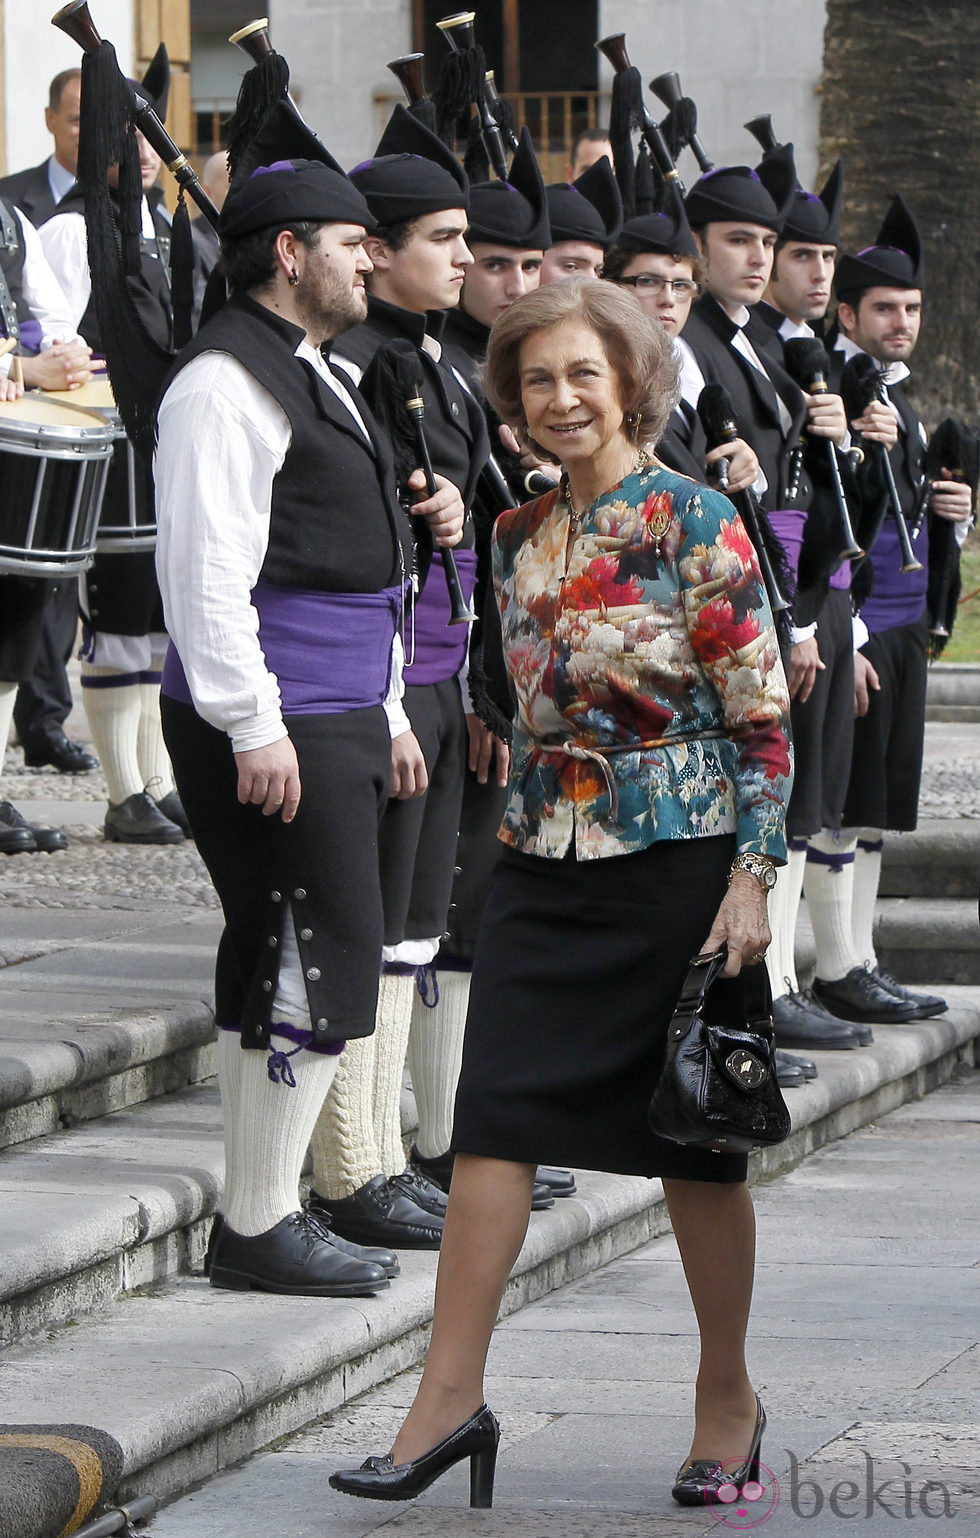 La Reina Sofía llega a Oviedo para la entrega de los Premios Príncipe de Asturias 2013